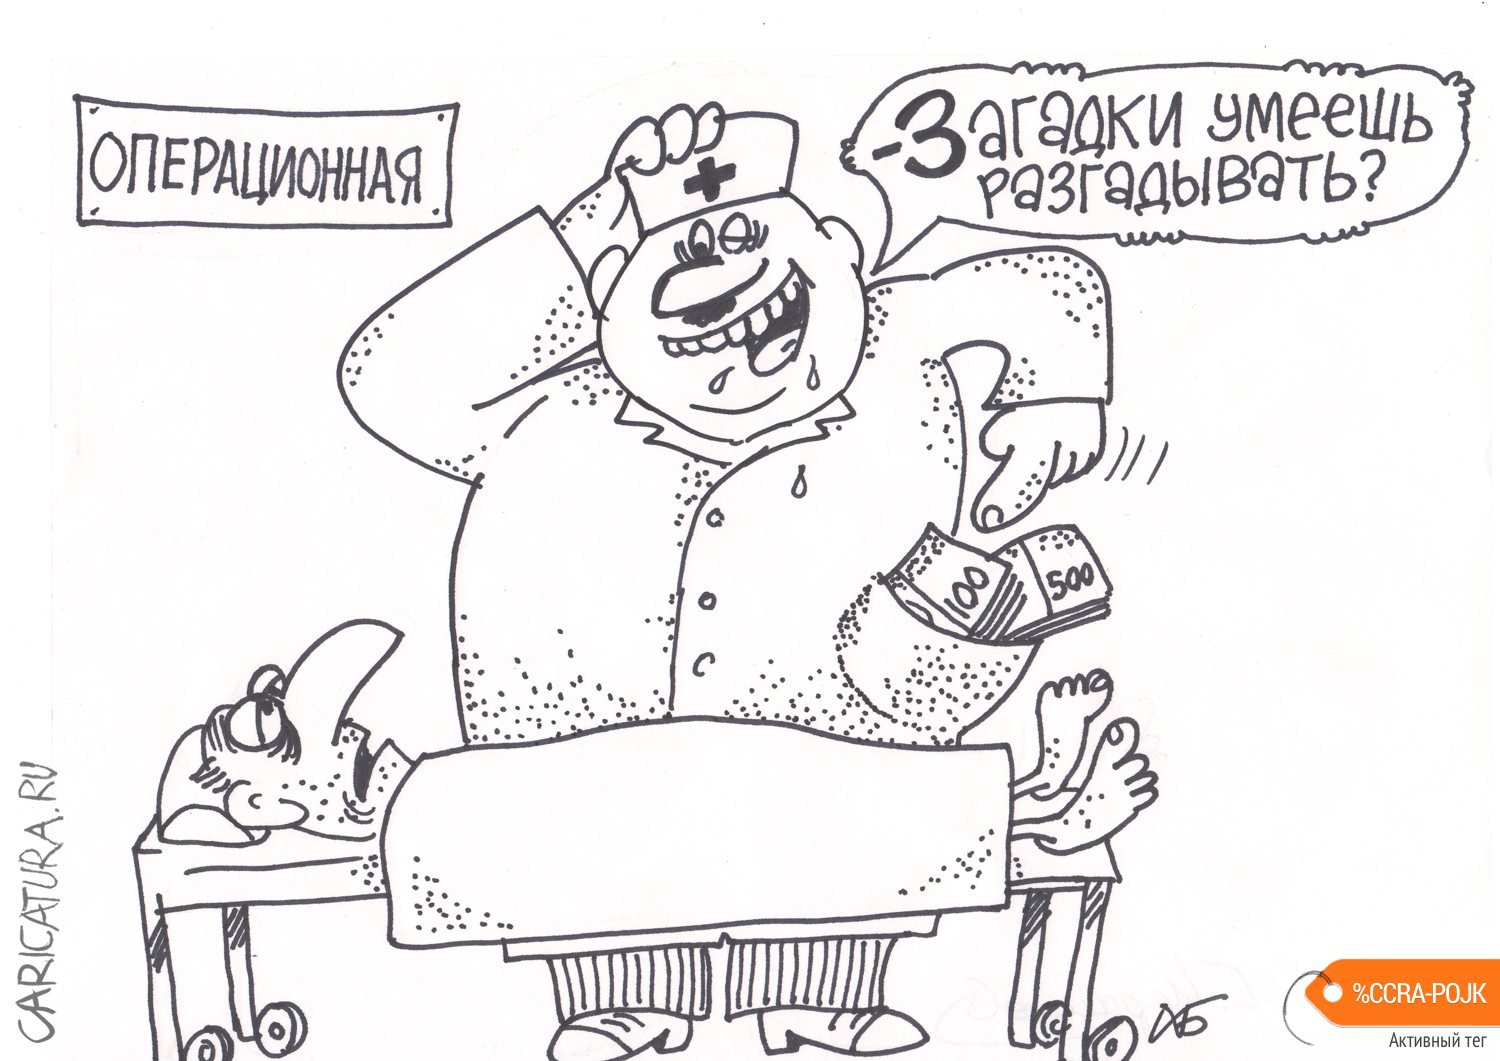 Карикатура "Операционная", Хожа-Баудди Исраилов